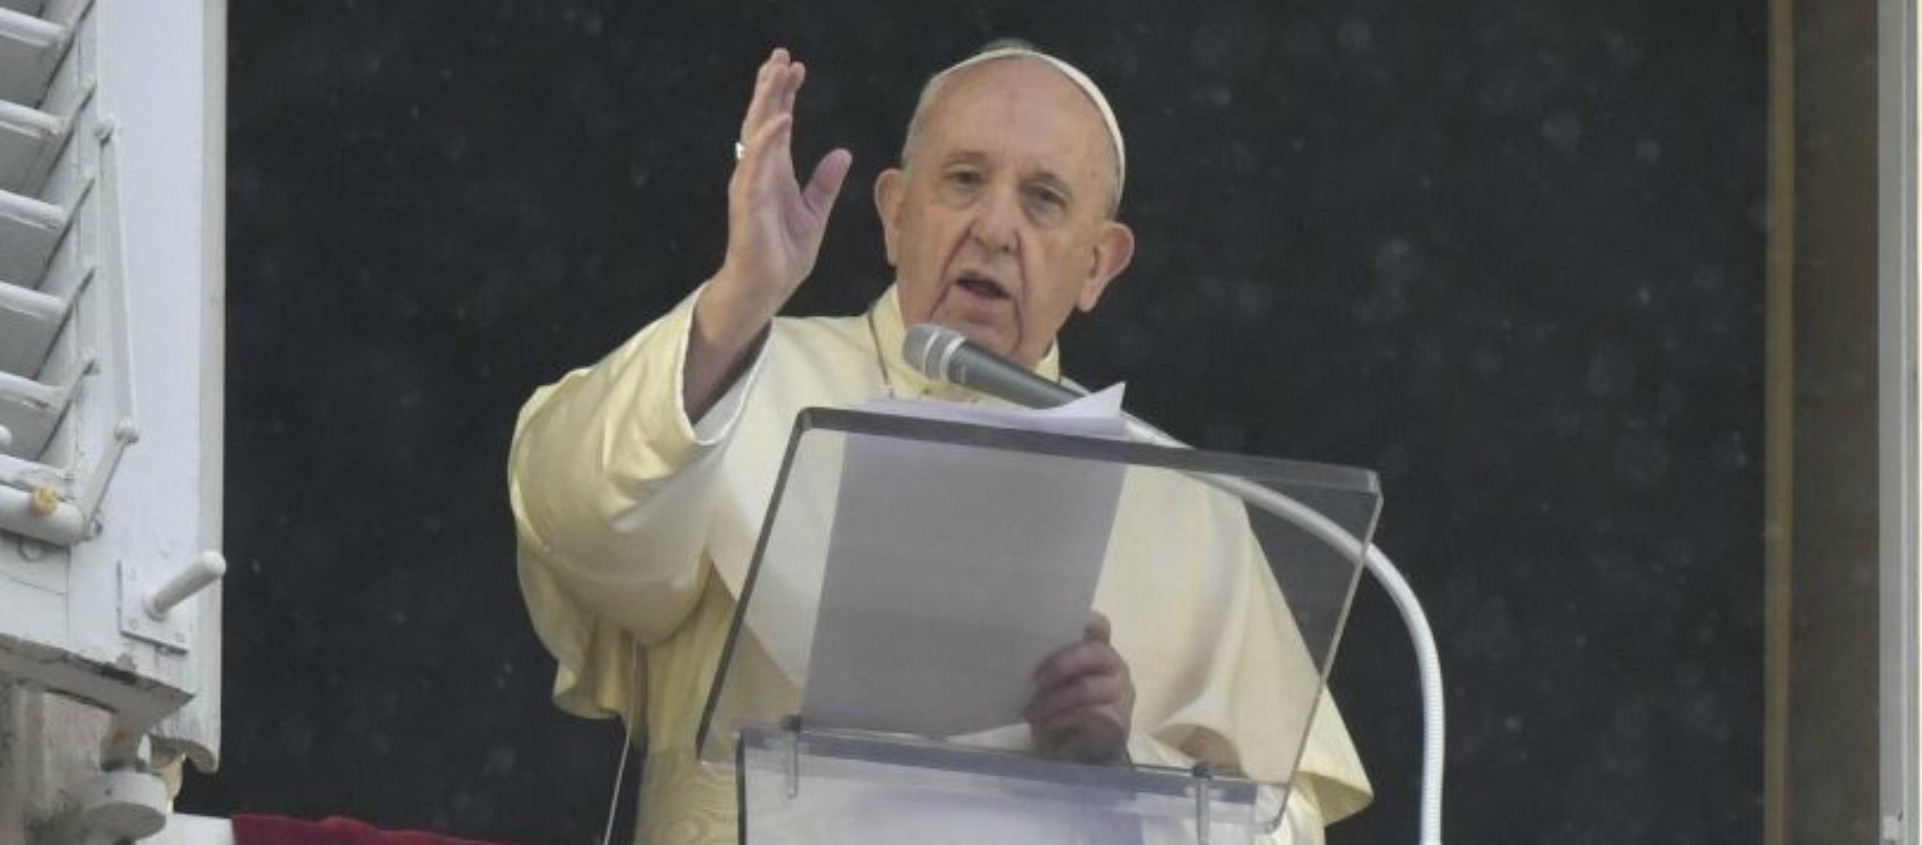 Le pape François appelle à respecter les règles anti-Covid-19 (14 novembre 2020) Pape-palais-apostolique